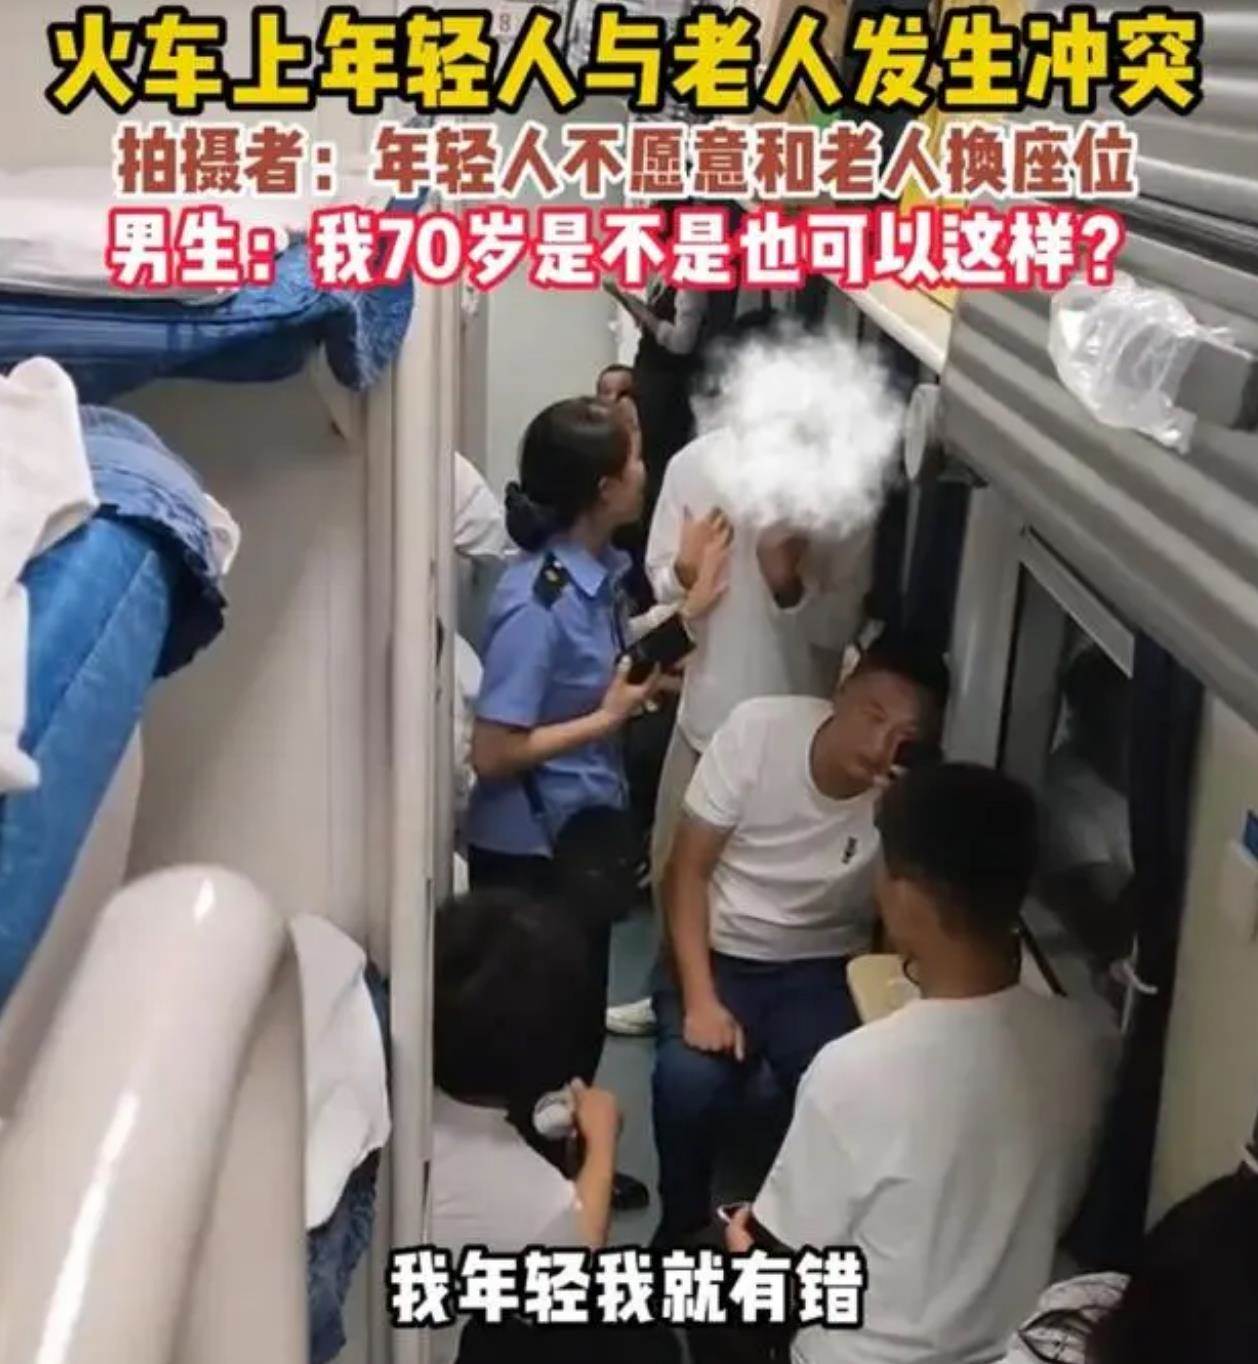 火车上小伙拒绝和大妈换座被骂 车上的车务员上前劝阻了双方